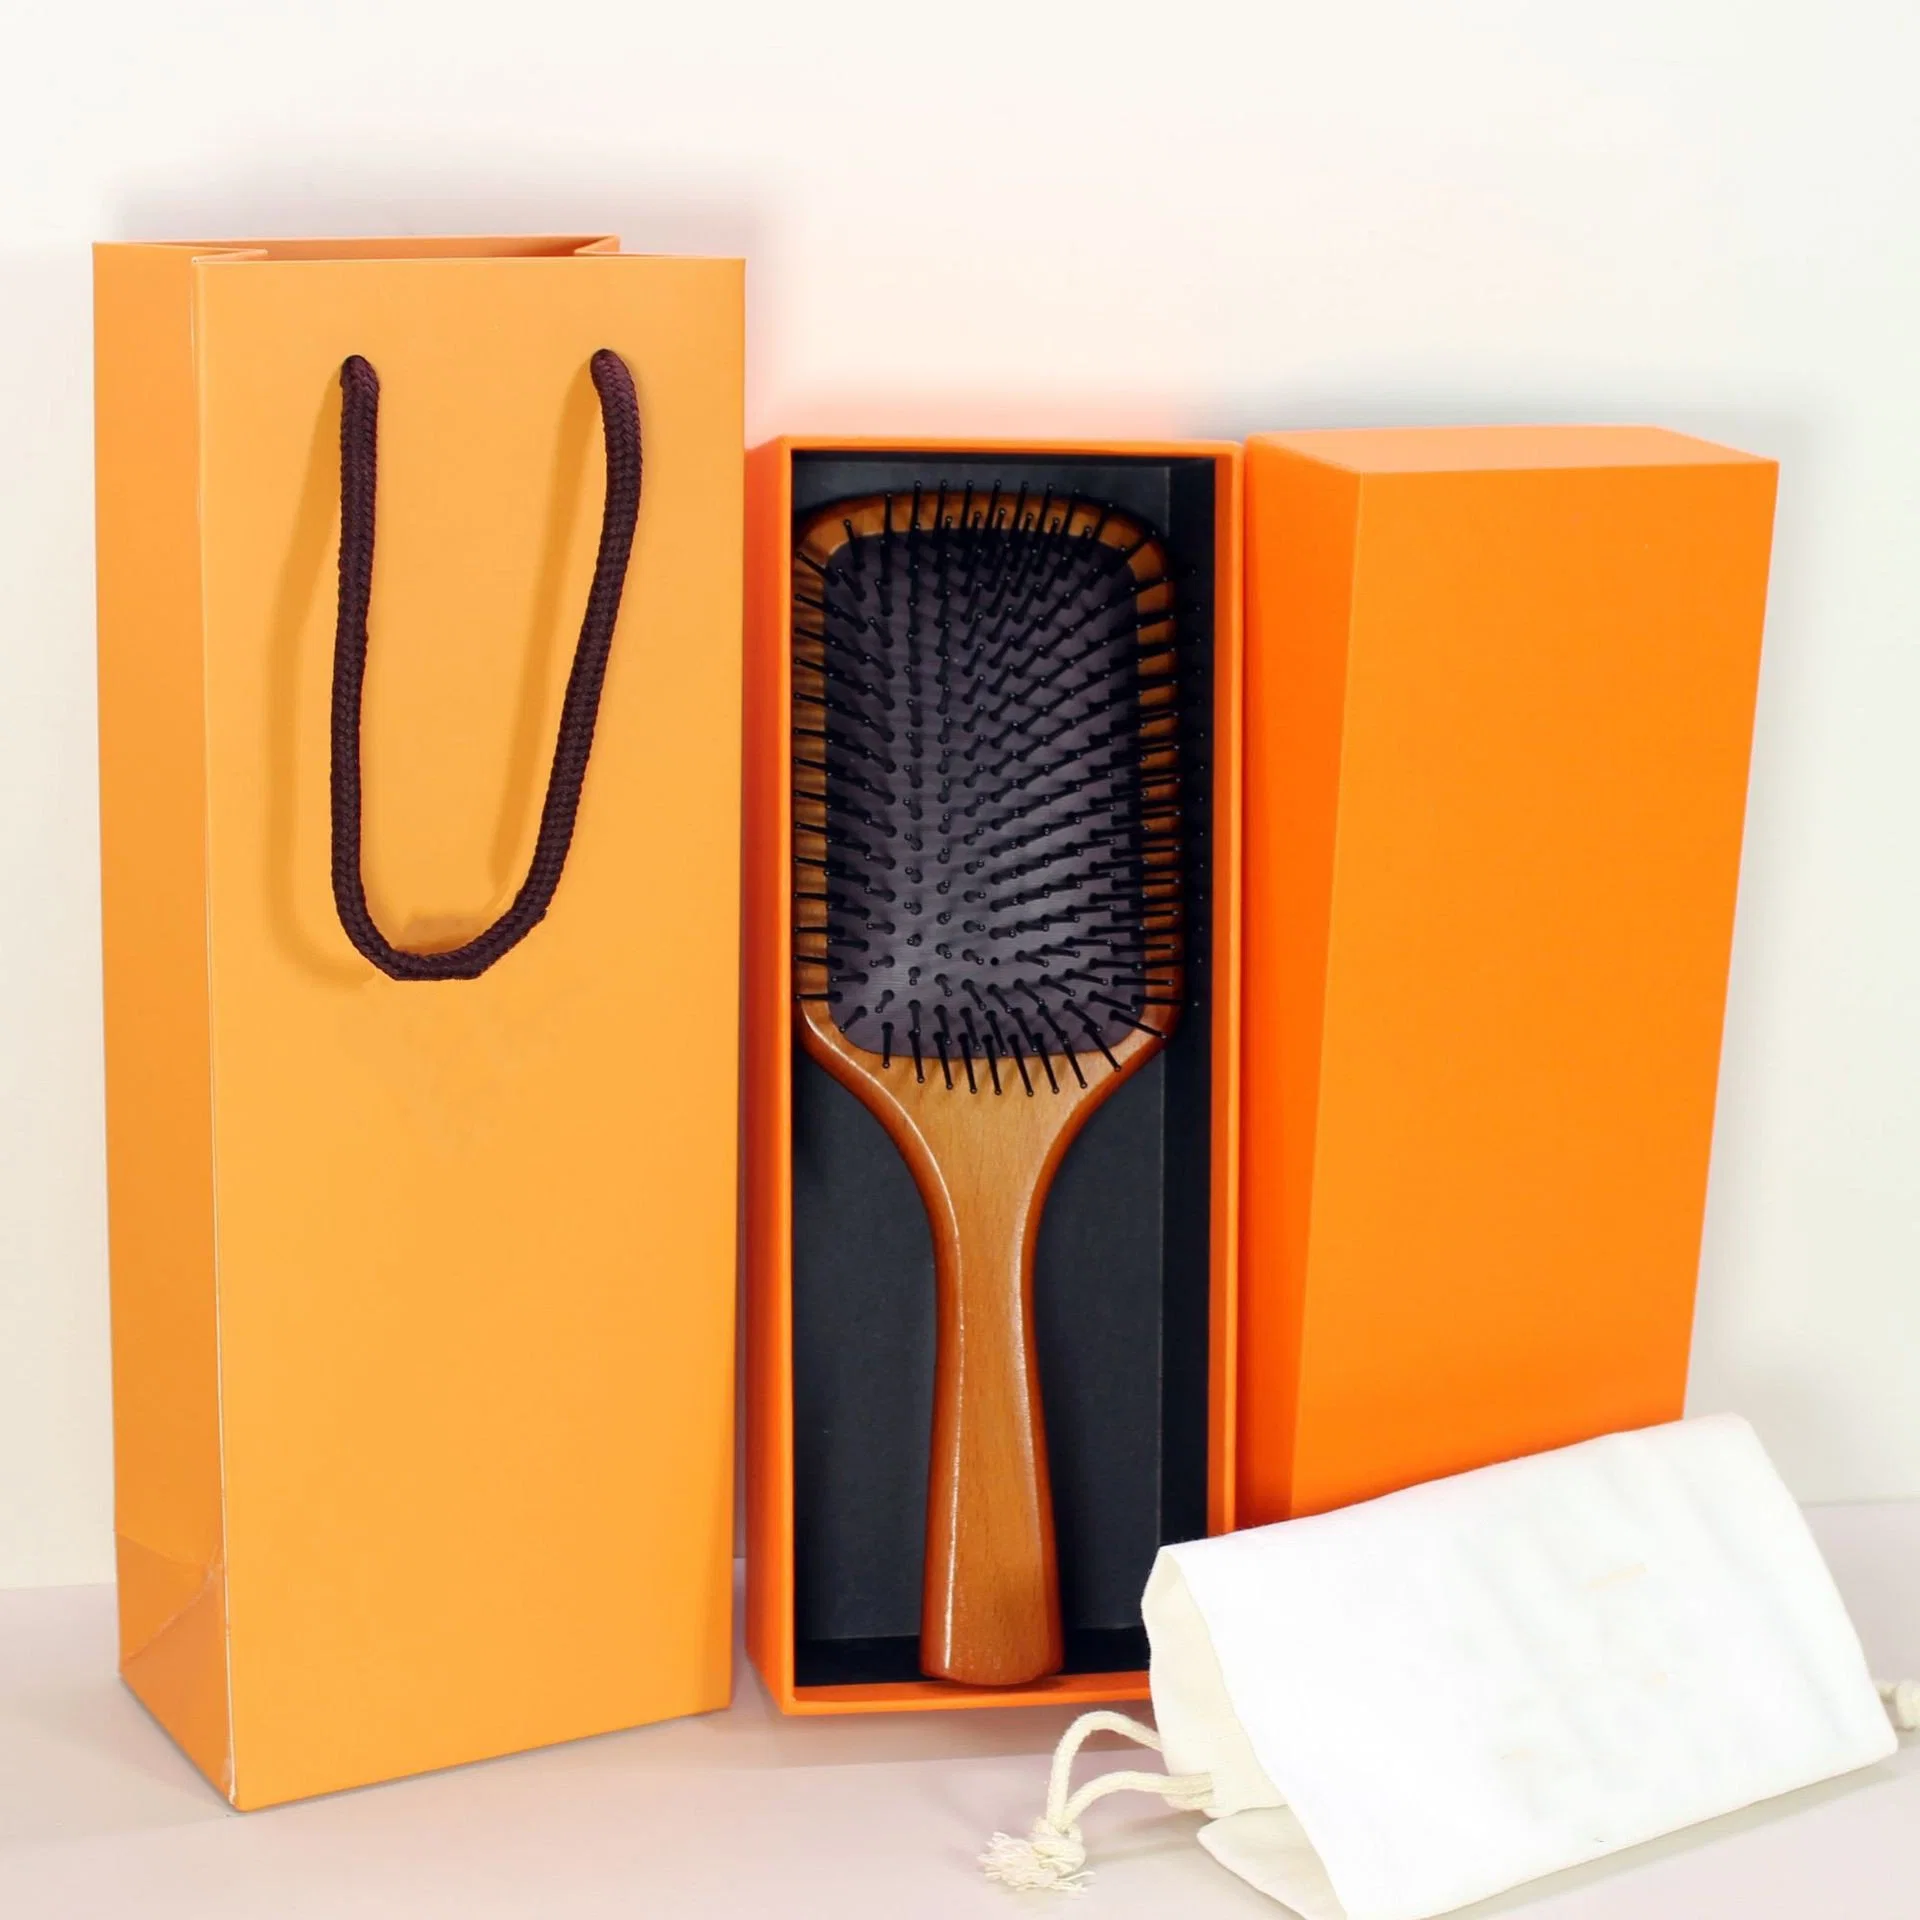 Personnalisez le peigne en bois de bambou de luxe, la brosse en bois de palette, le peigne à sac d'air, la brosse à cheveux, la brosse à cheveux mouillés et secs pour extensions de cheveux.